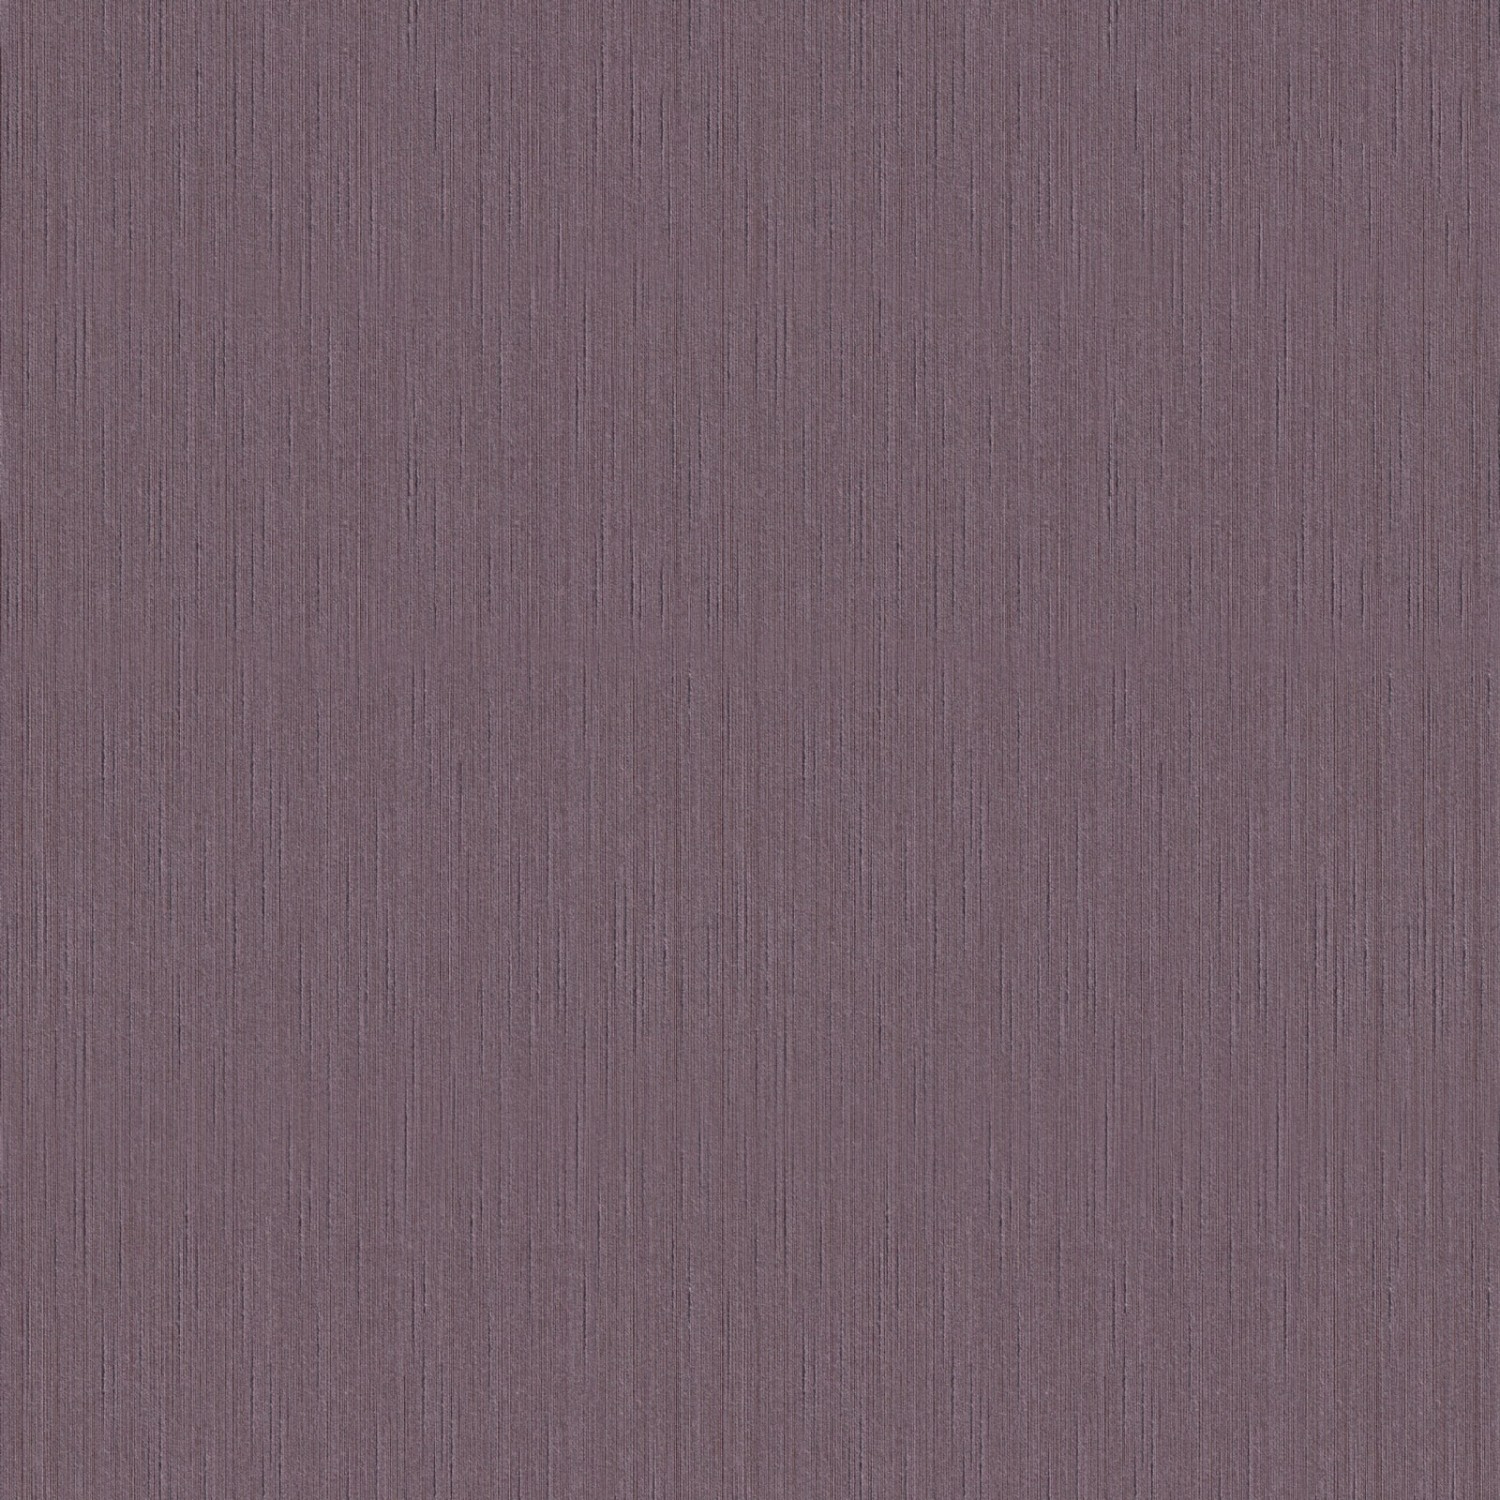 Bricoflor Uni Vliestapete in Aubergine Elegante Tapete mit Textil Struktur in Violett Lila Textiltapete Edel Ideal für Wohnzimmer und Esszimmer von Bricoflor